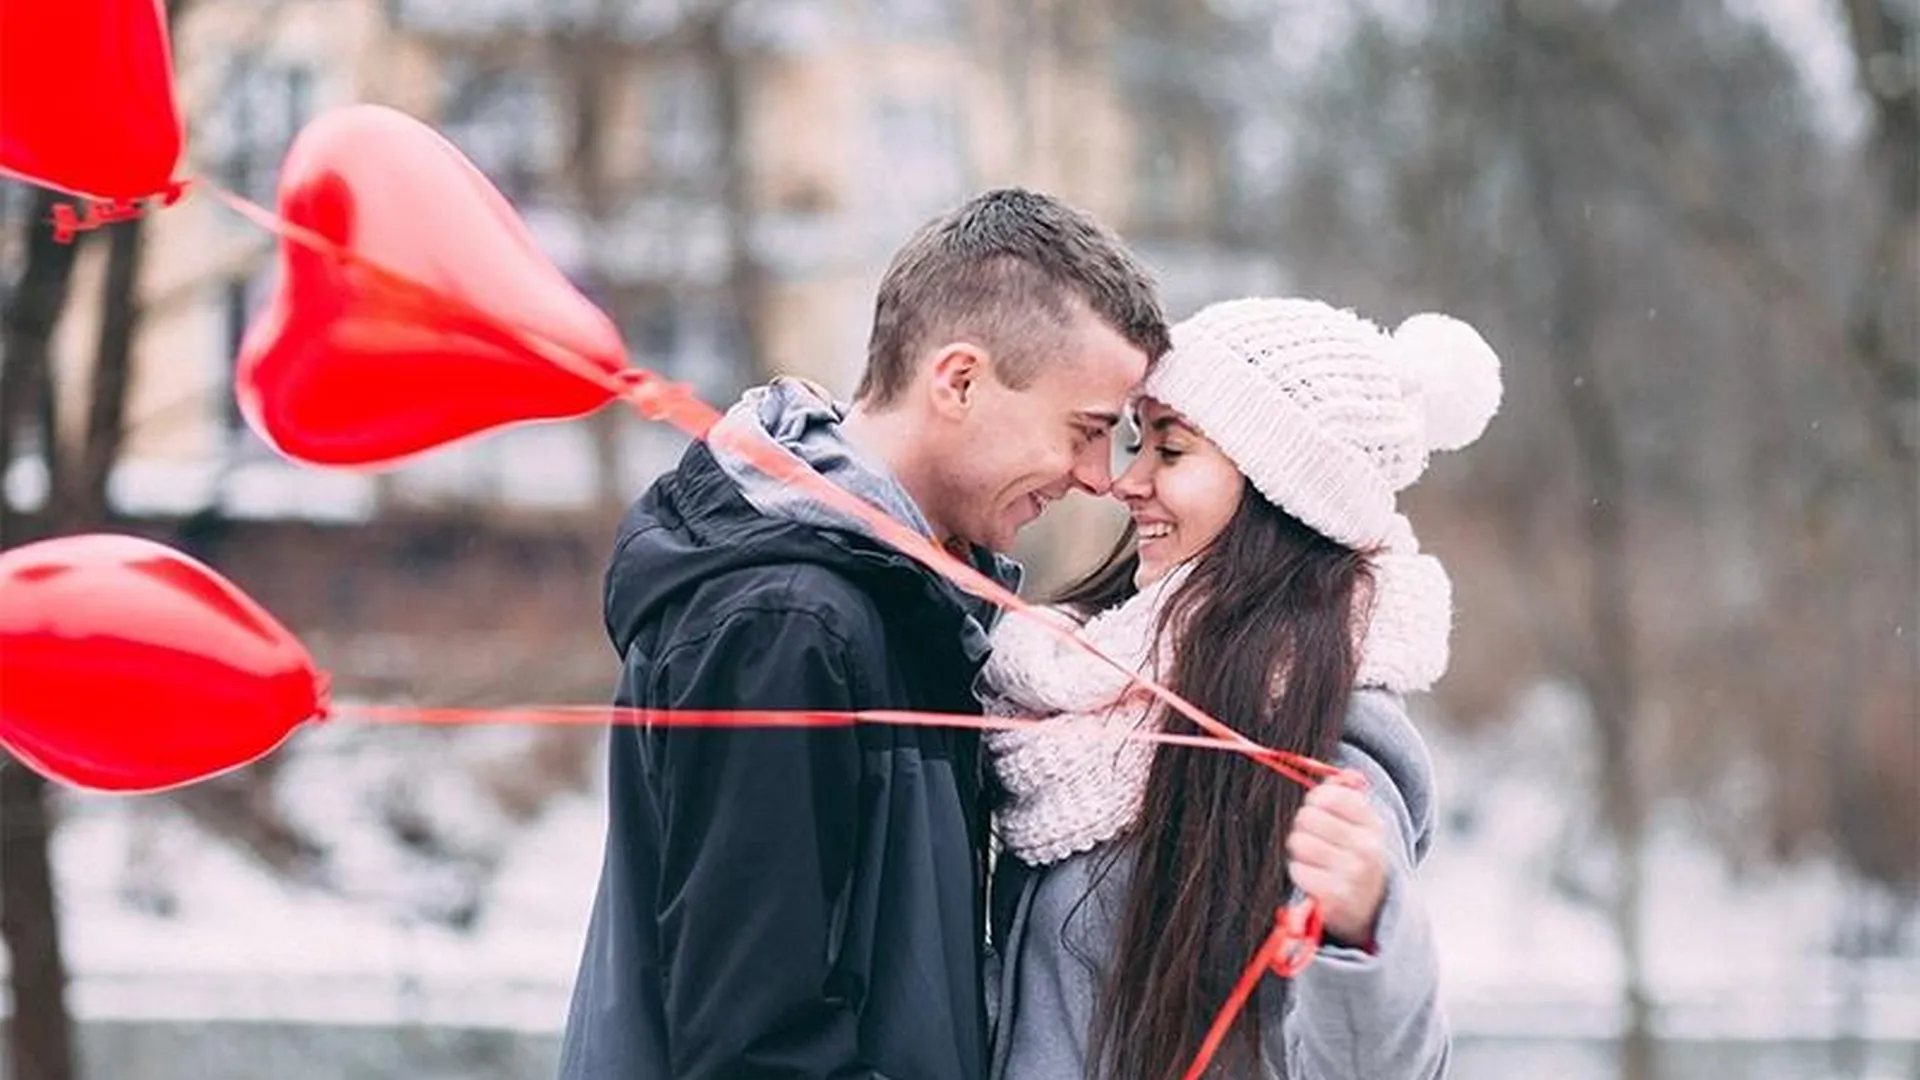 Необычными историями знакомств поделились жители Подмосковья в День влюбленных